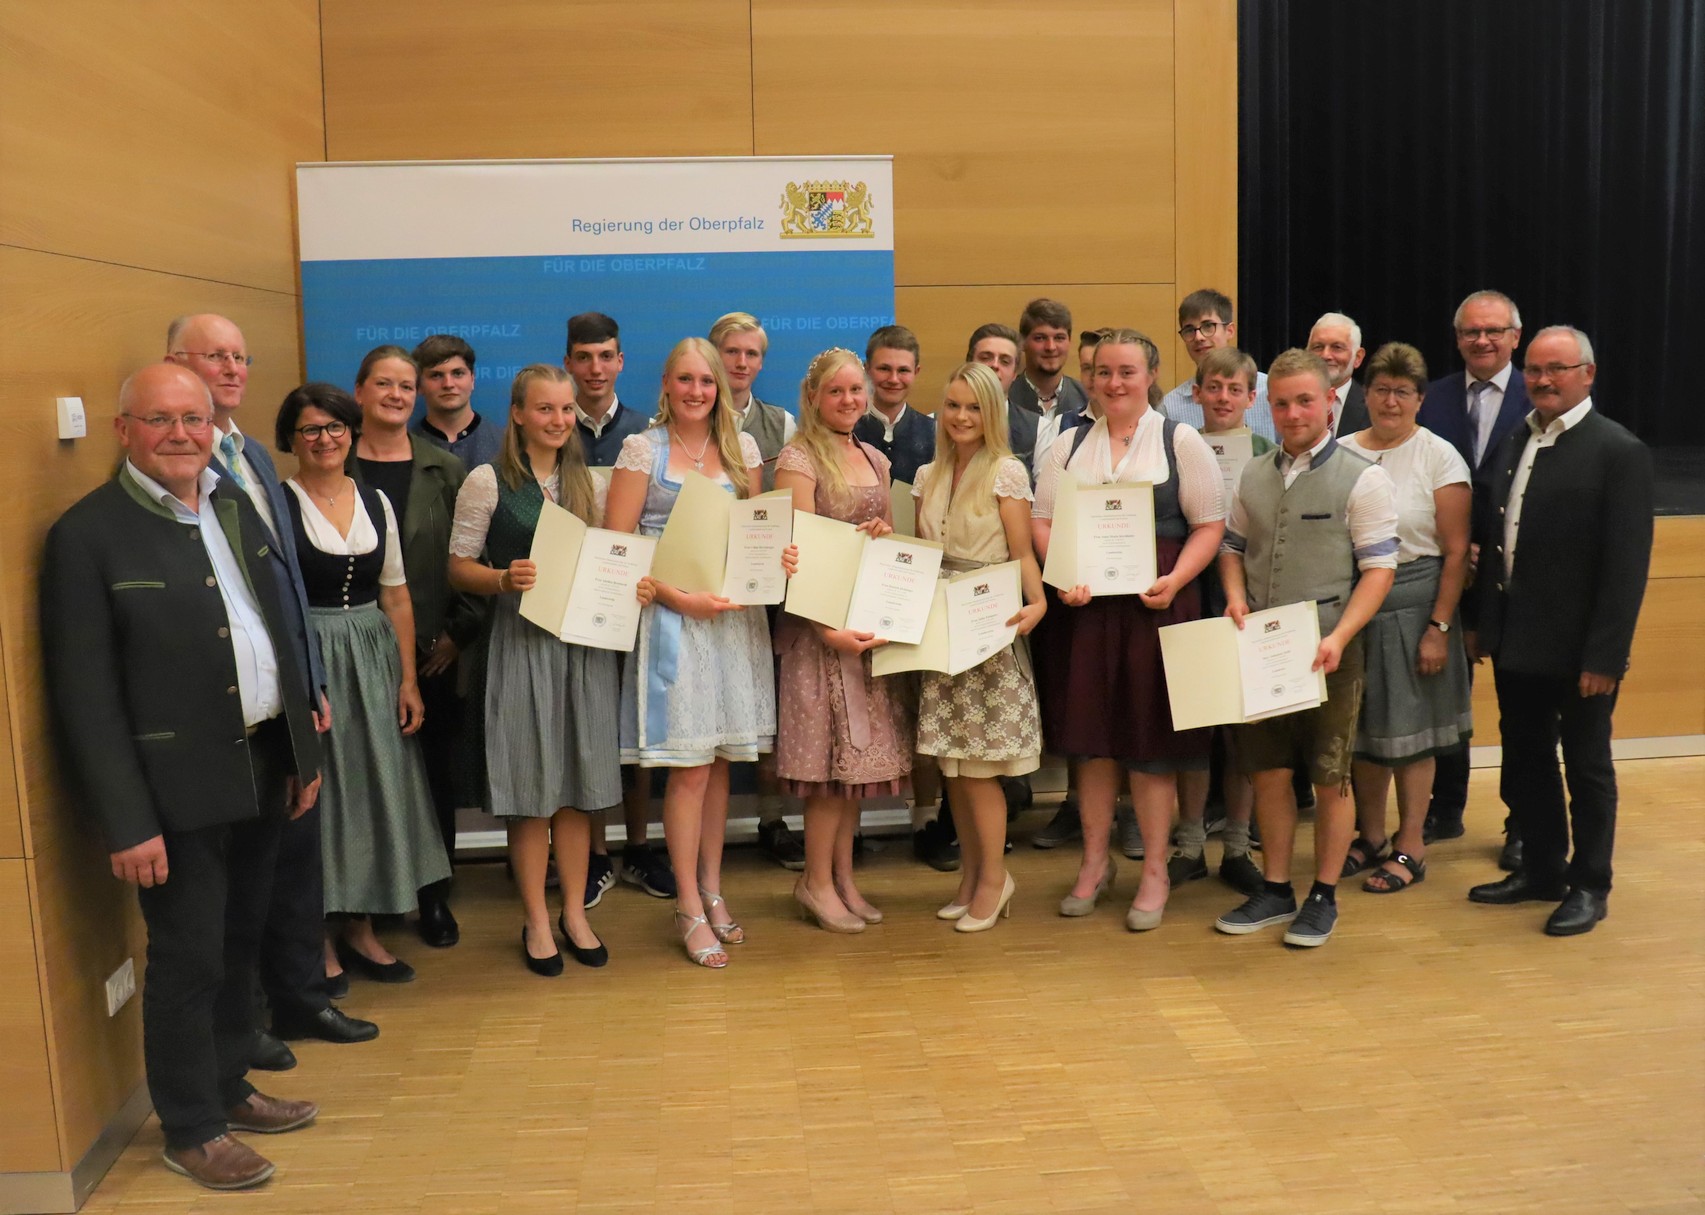 58 Landwirtschafts-Absolventinnen und -Absolventen aus den Landkreisen Cham, Regensburg und Schwandorf geehrt